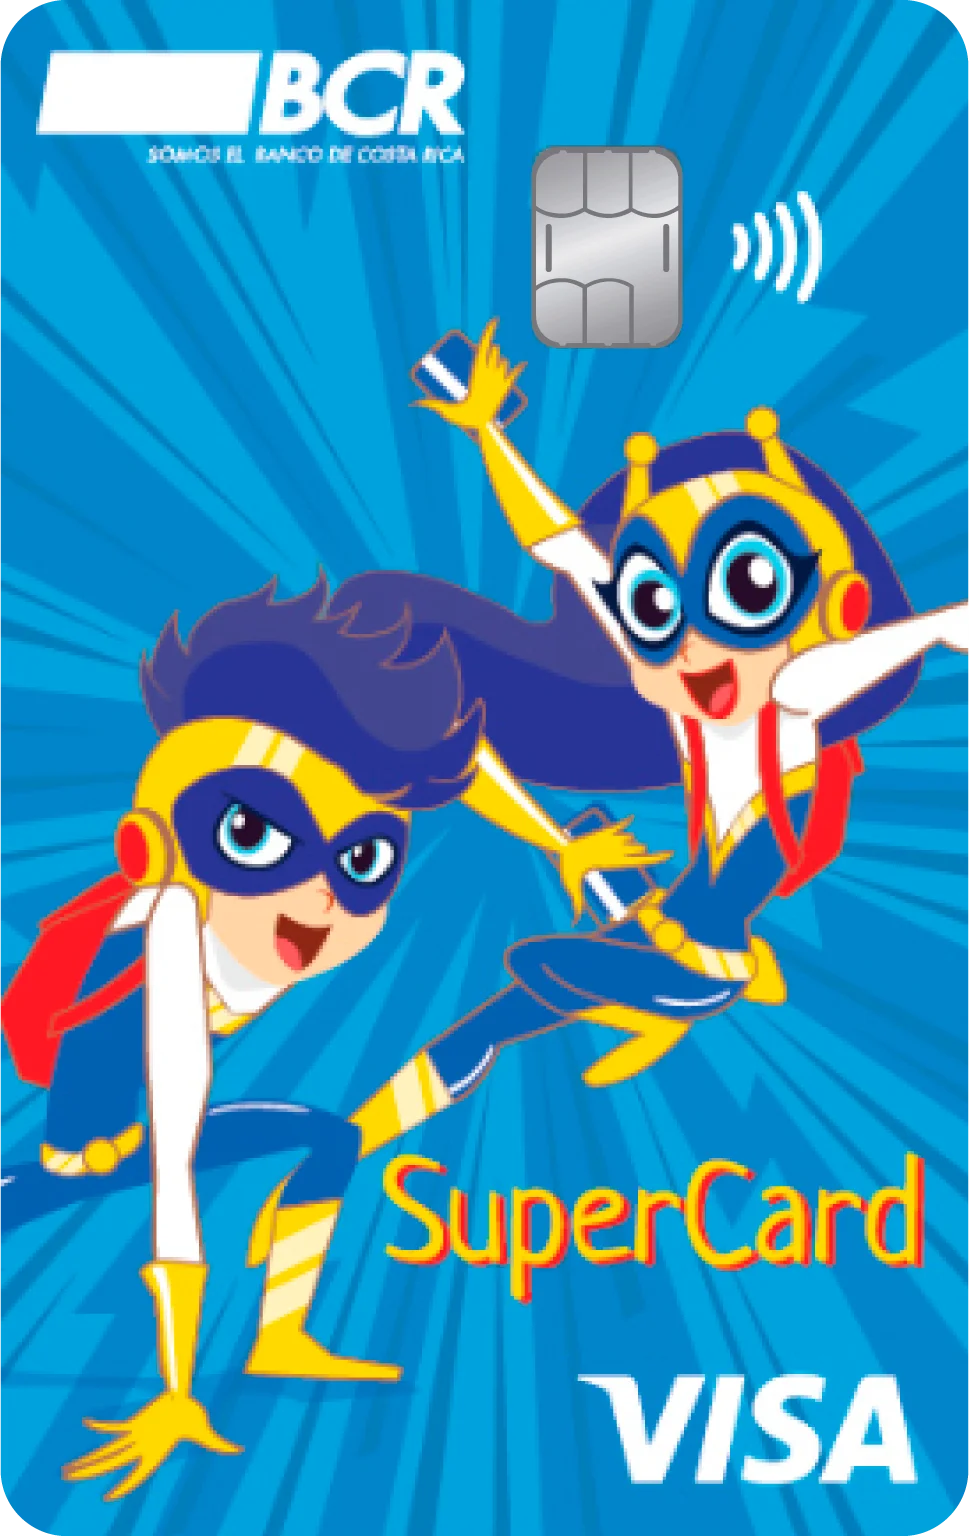 Imagen de la tarjeta de débito Visa SuperCard